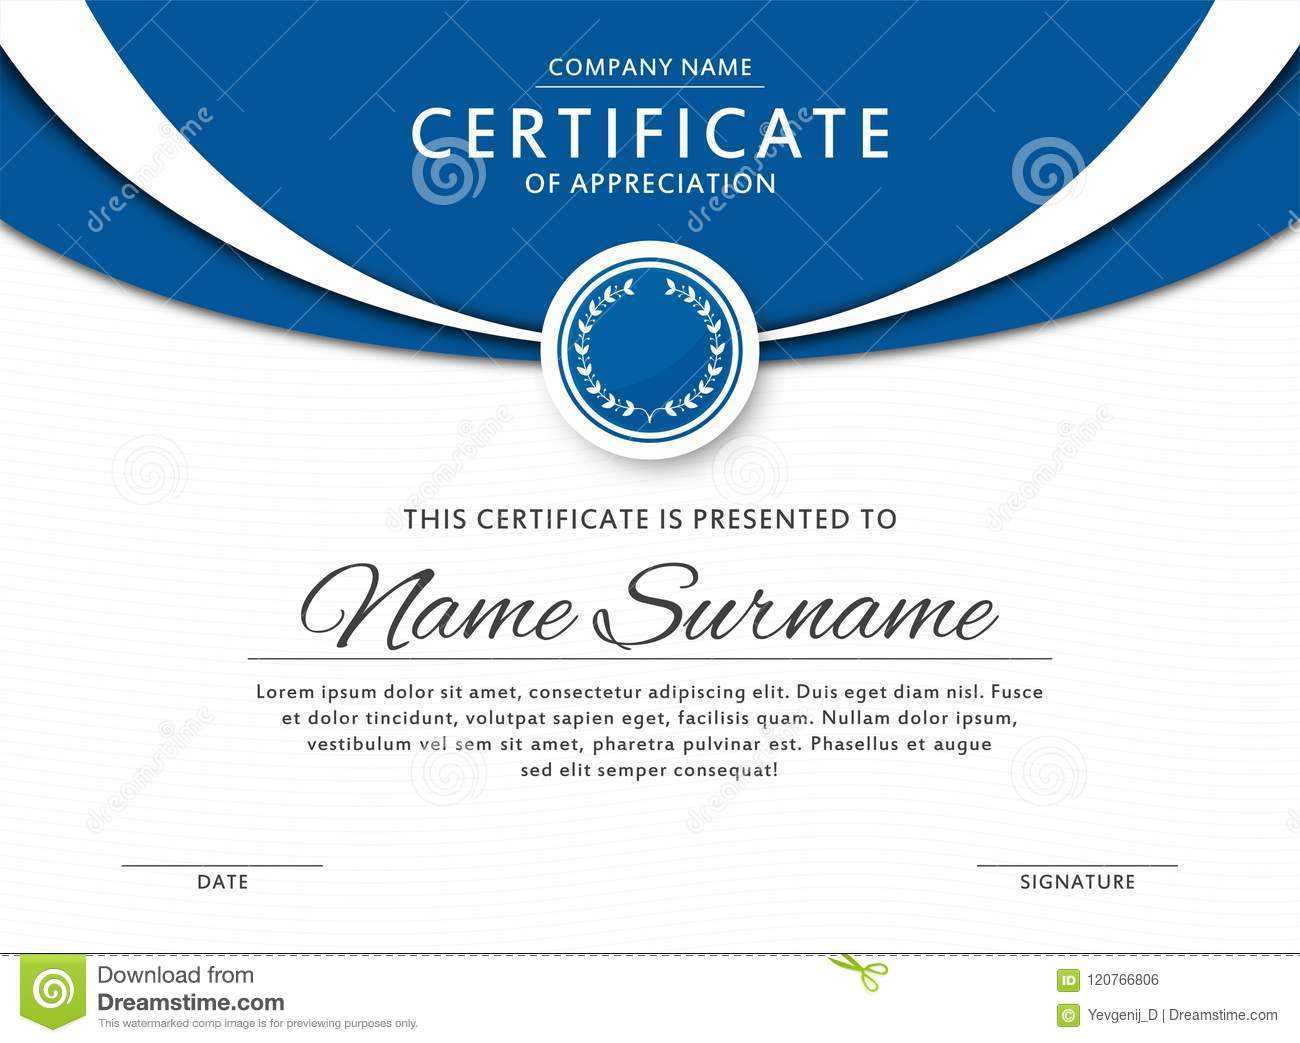 Elegant Certificates Templates - Calep.midnightpig.co In Elegant Certificate Templates Free